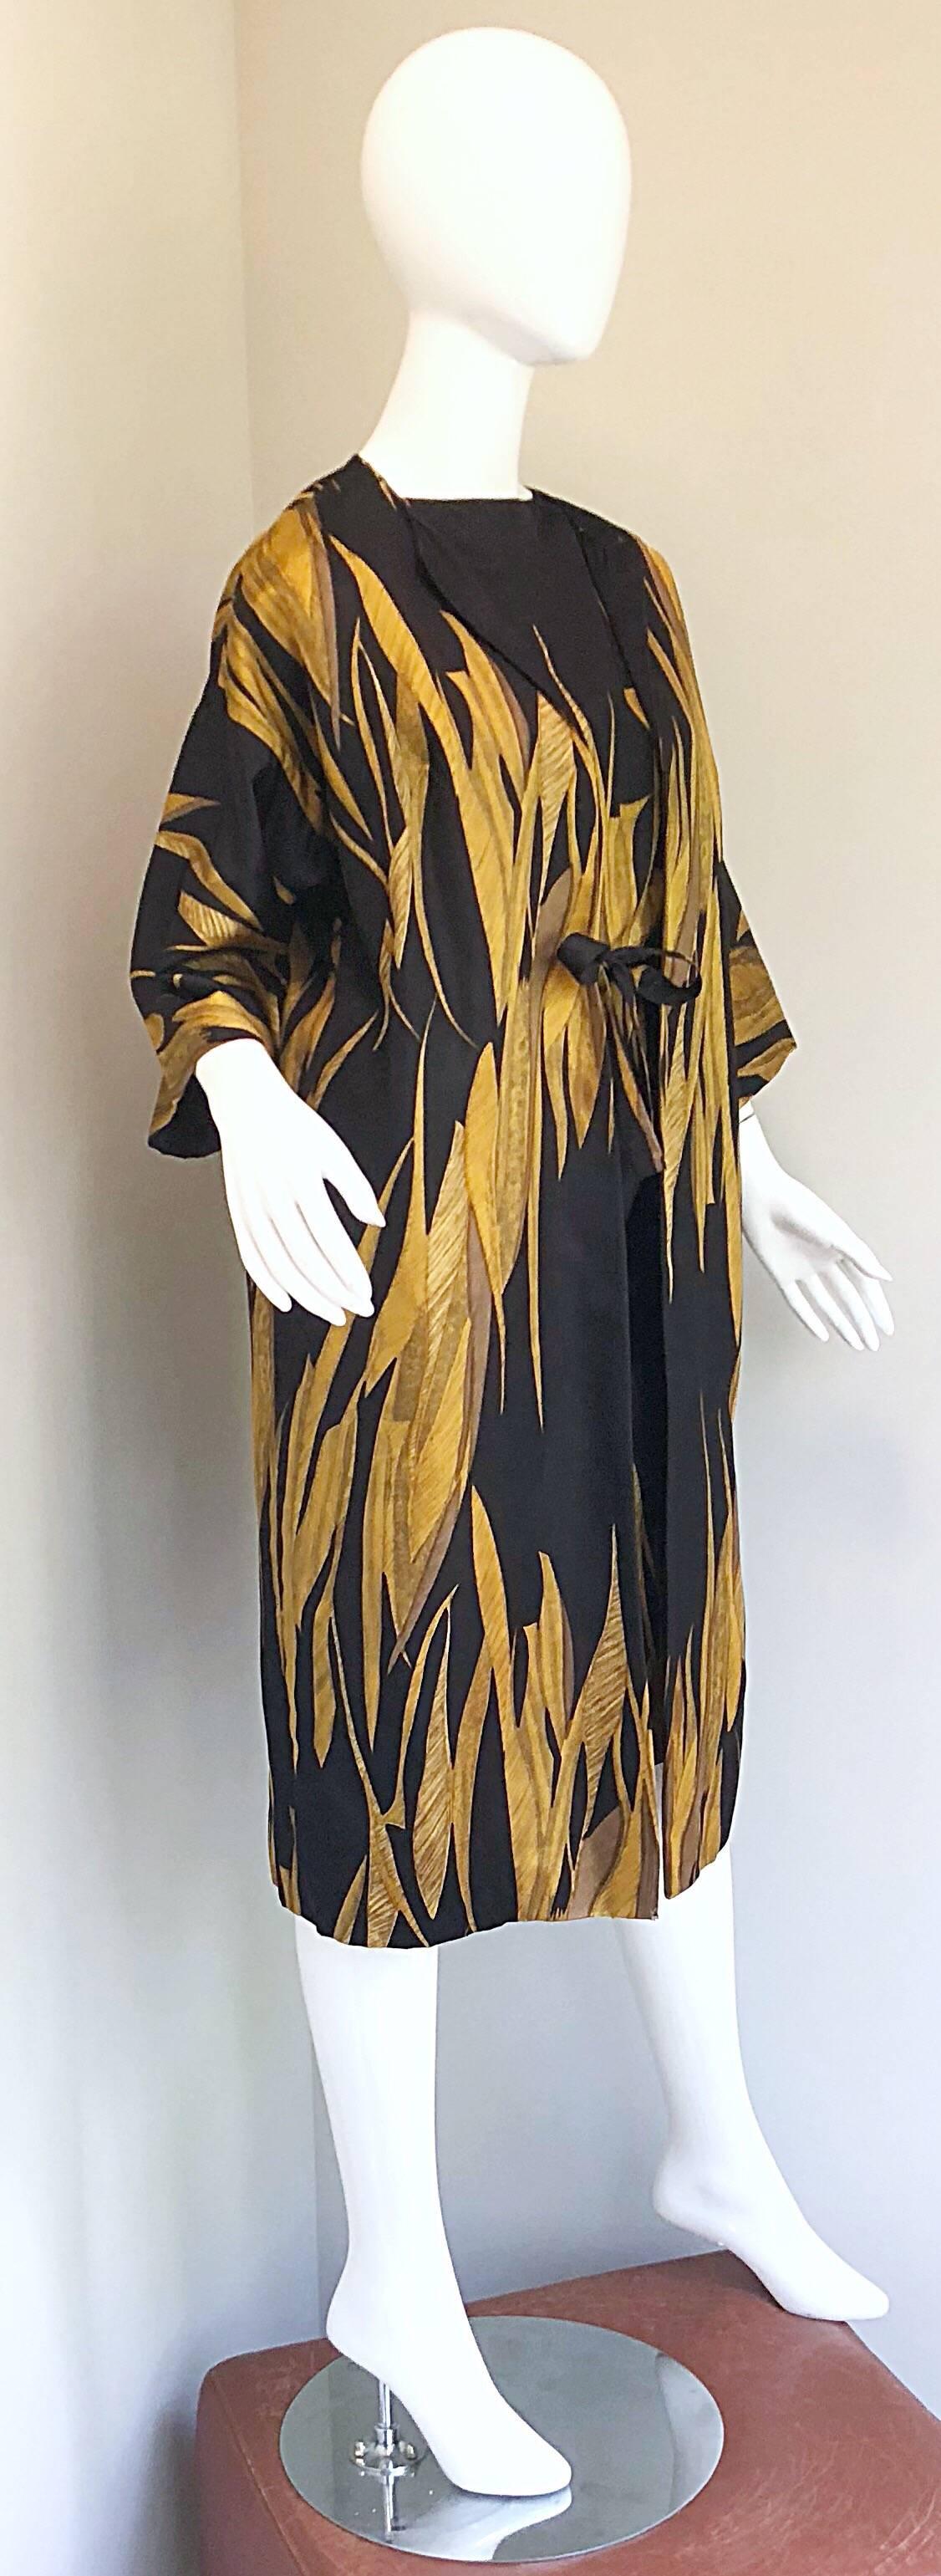 Rare 1950s Neiman Marcus Black + Gold Wheat Print Vintage Dress & Kimono Jacket 6